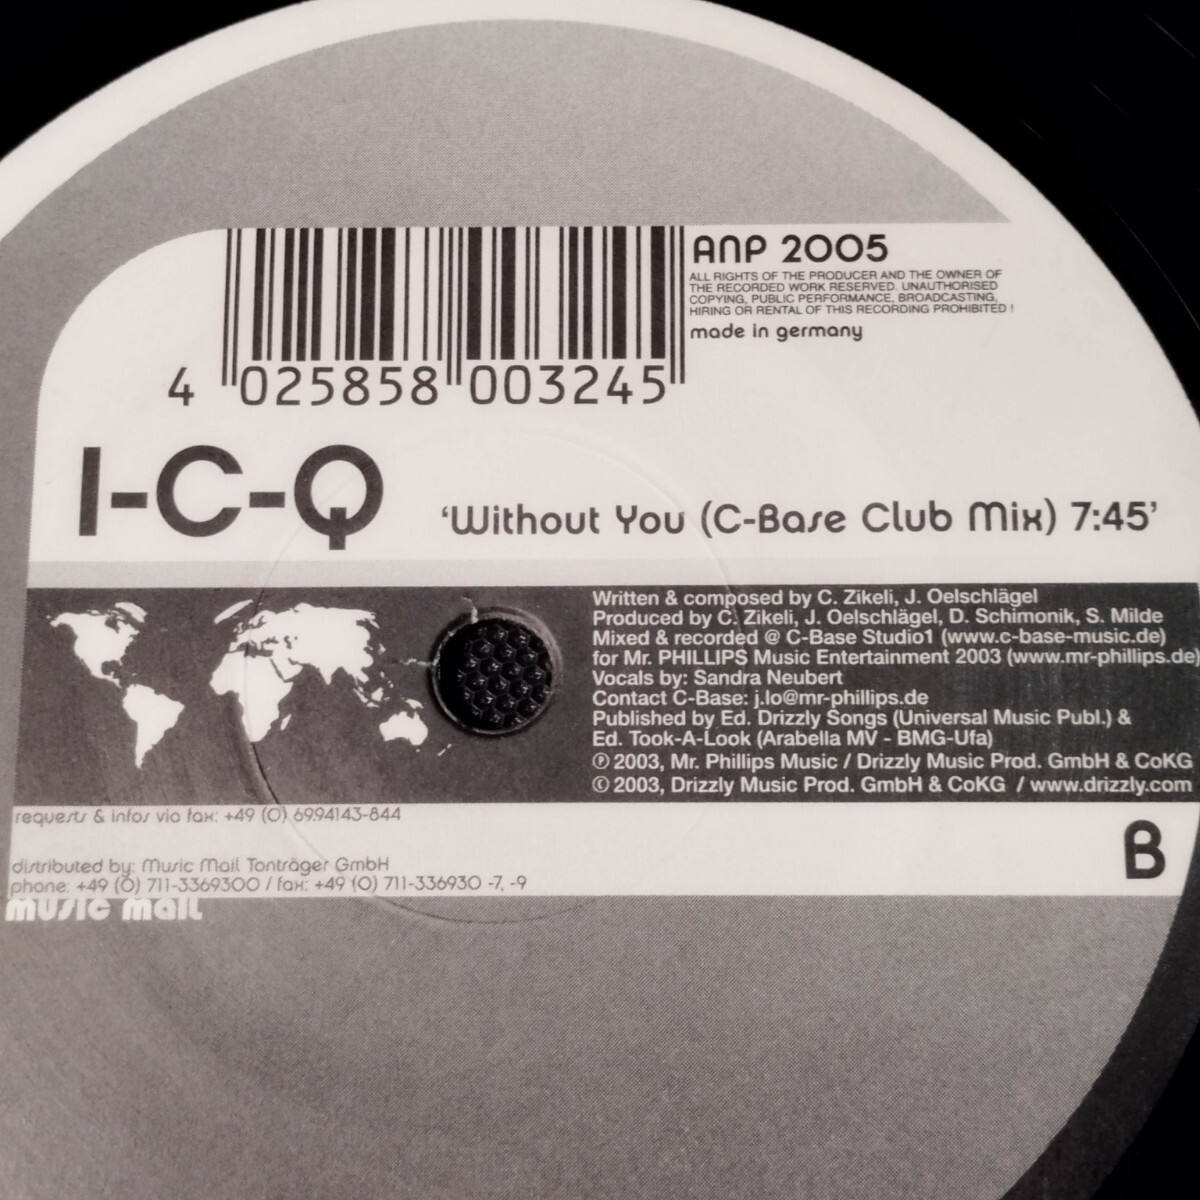 DJ用レコード【I-C-Q Without You Club Mix C-Base Club Mix】 レコード 12インチ クラブ ダンス テクノ トランス ハウス 15枚まで同梱可能_画像6